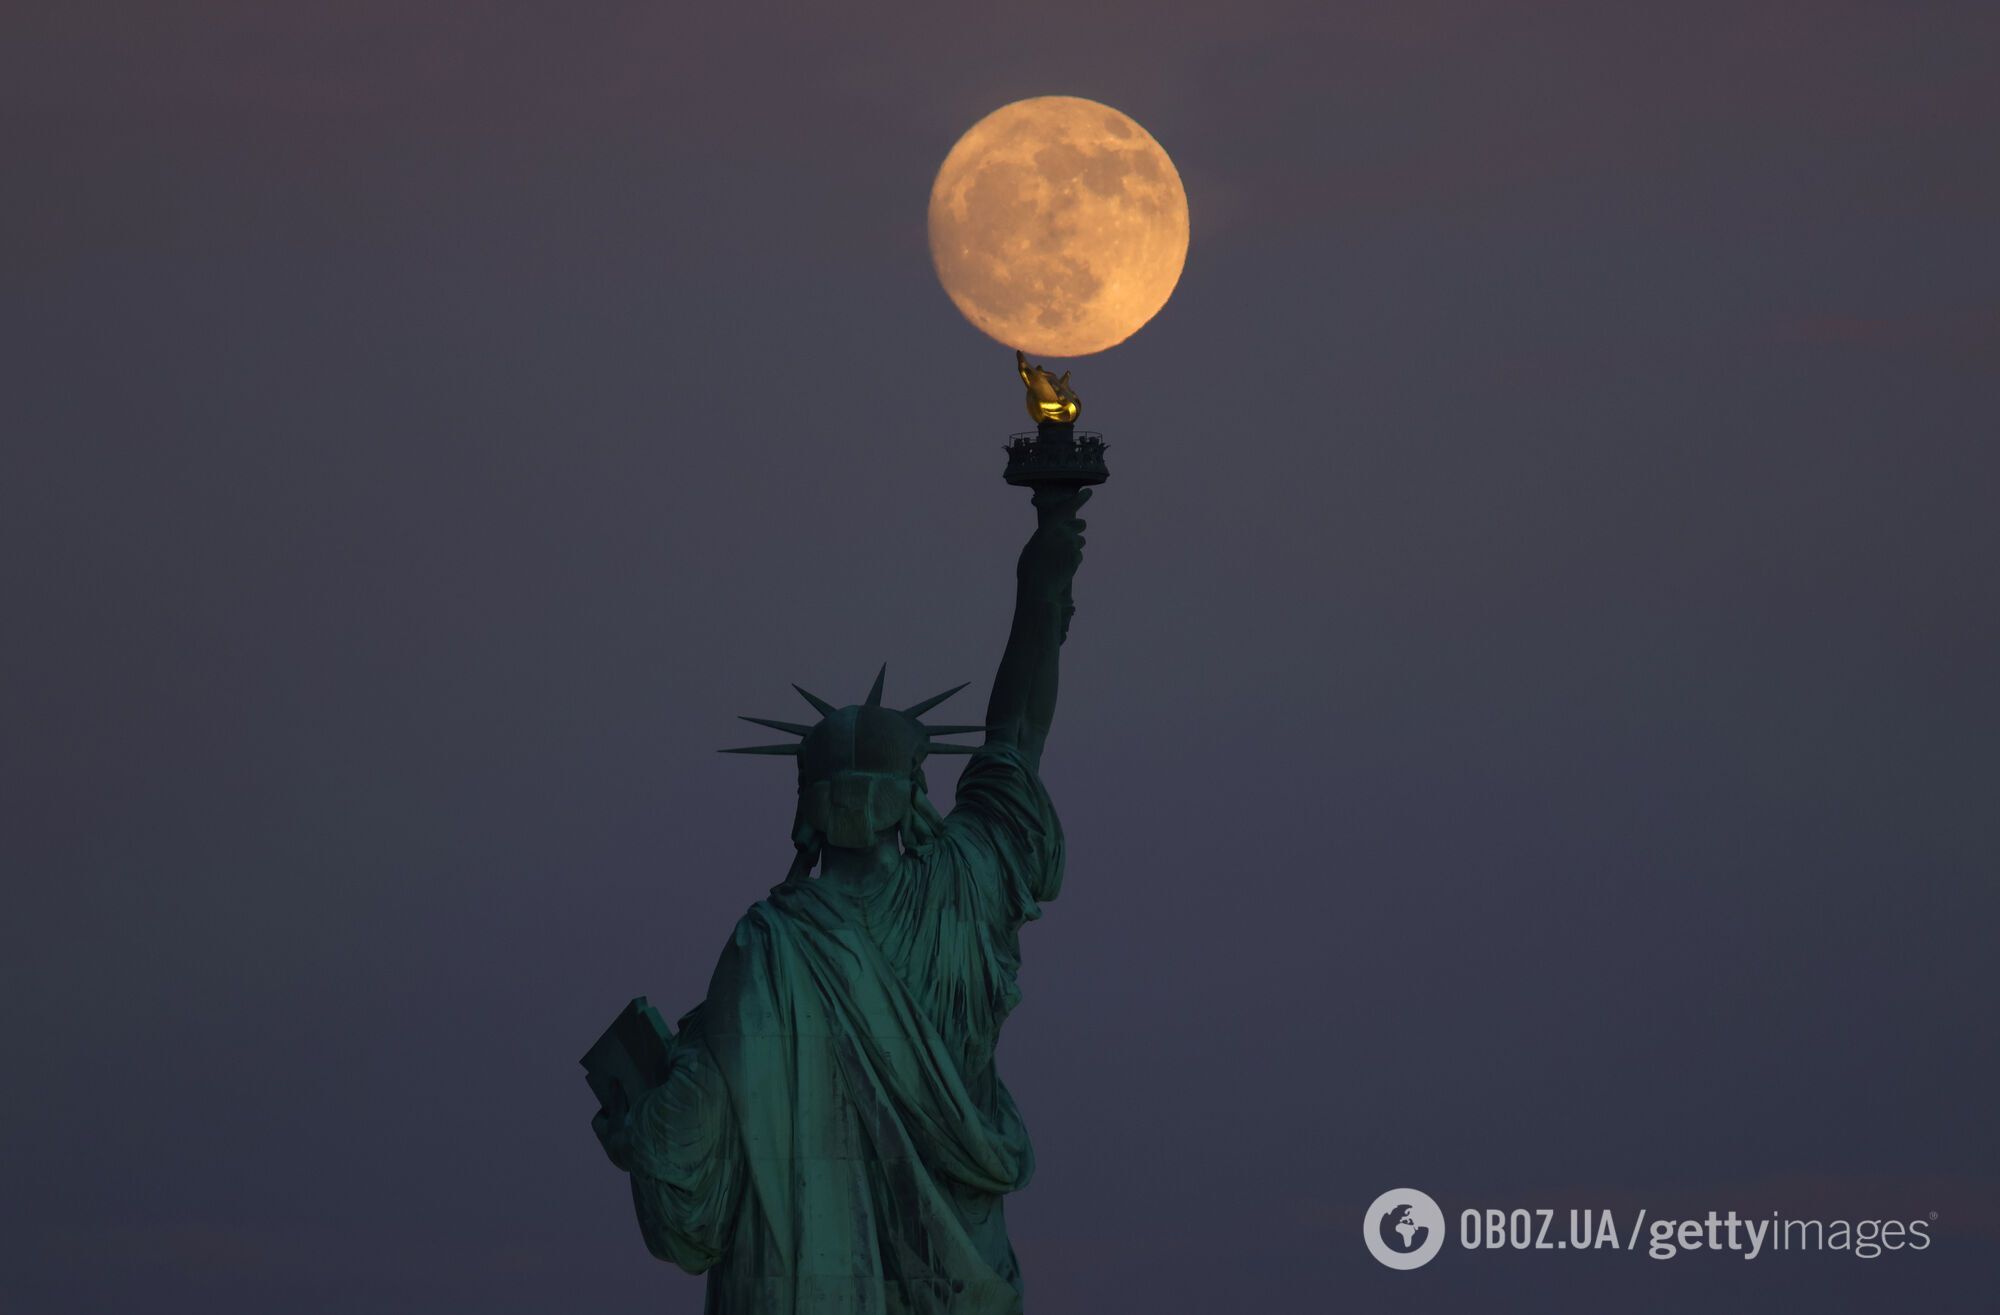 Сеть очаровало фото Клубничной Луны "на кровати из облаков", которое сделал американский фотограф